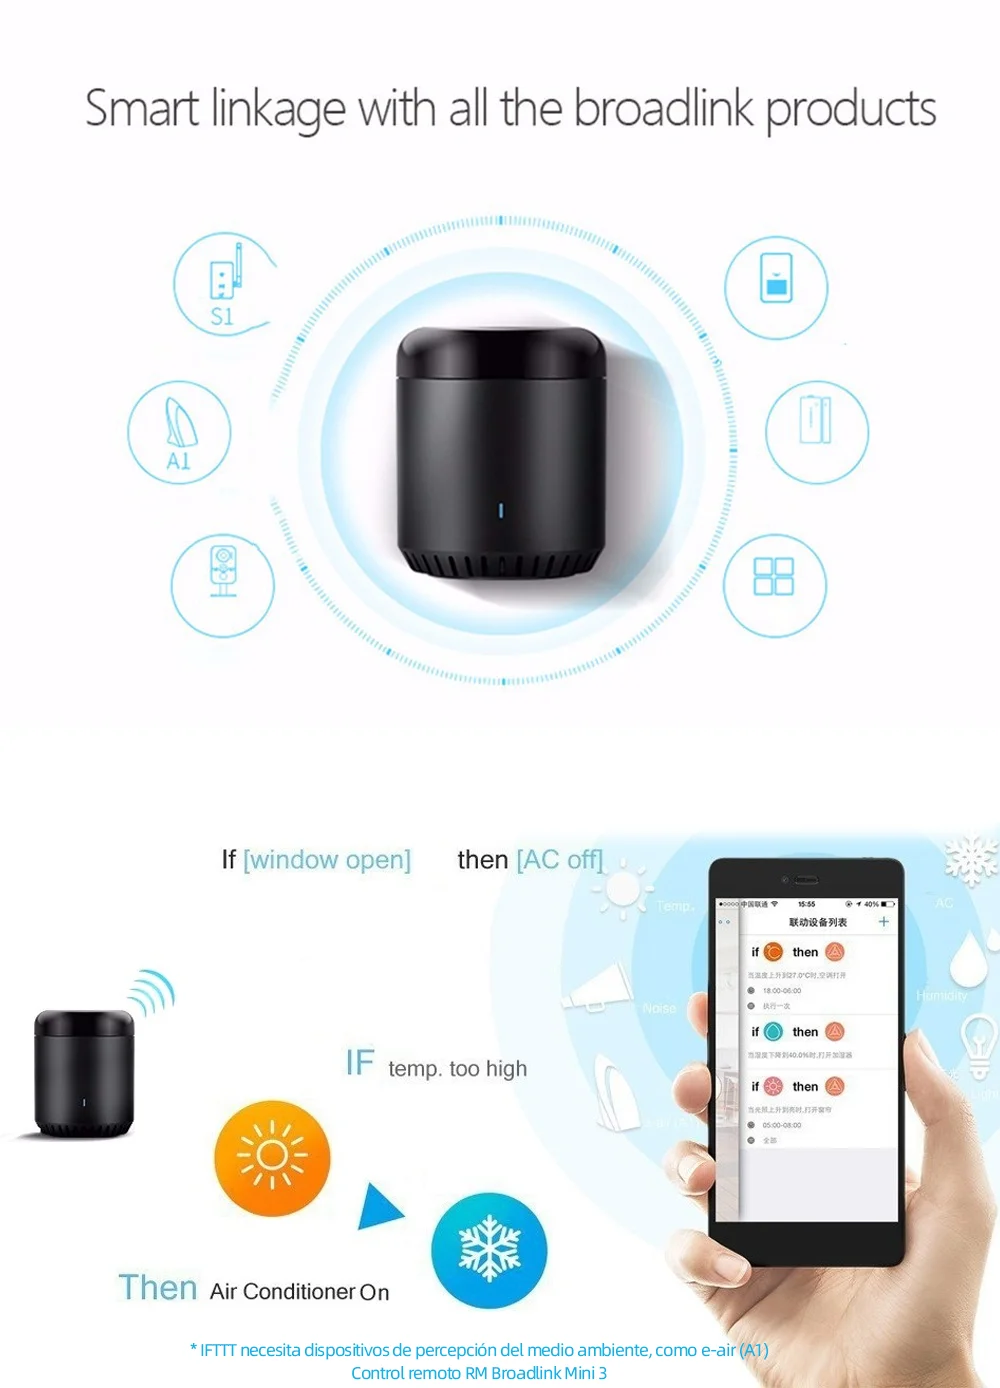 Broadlink Rm Mini 3 Wifi переключатель ИК пульт дистанционного управления умный дом автоматизация Голосовое управление для IOS Android Google Home Alexa